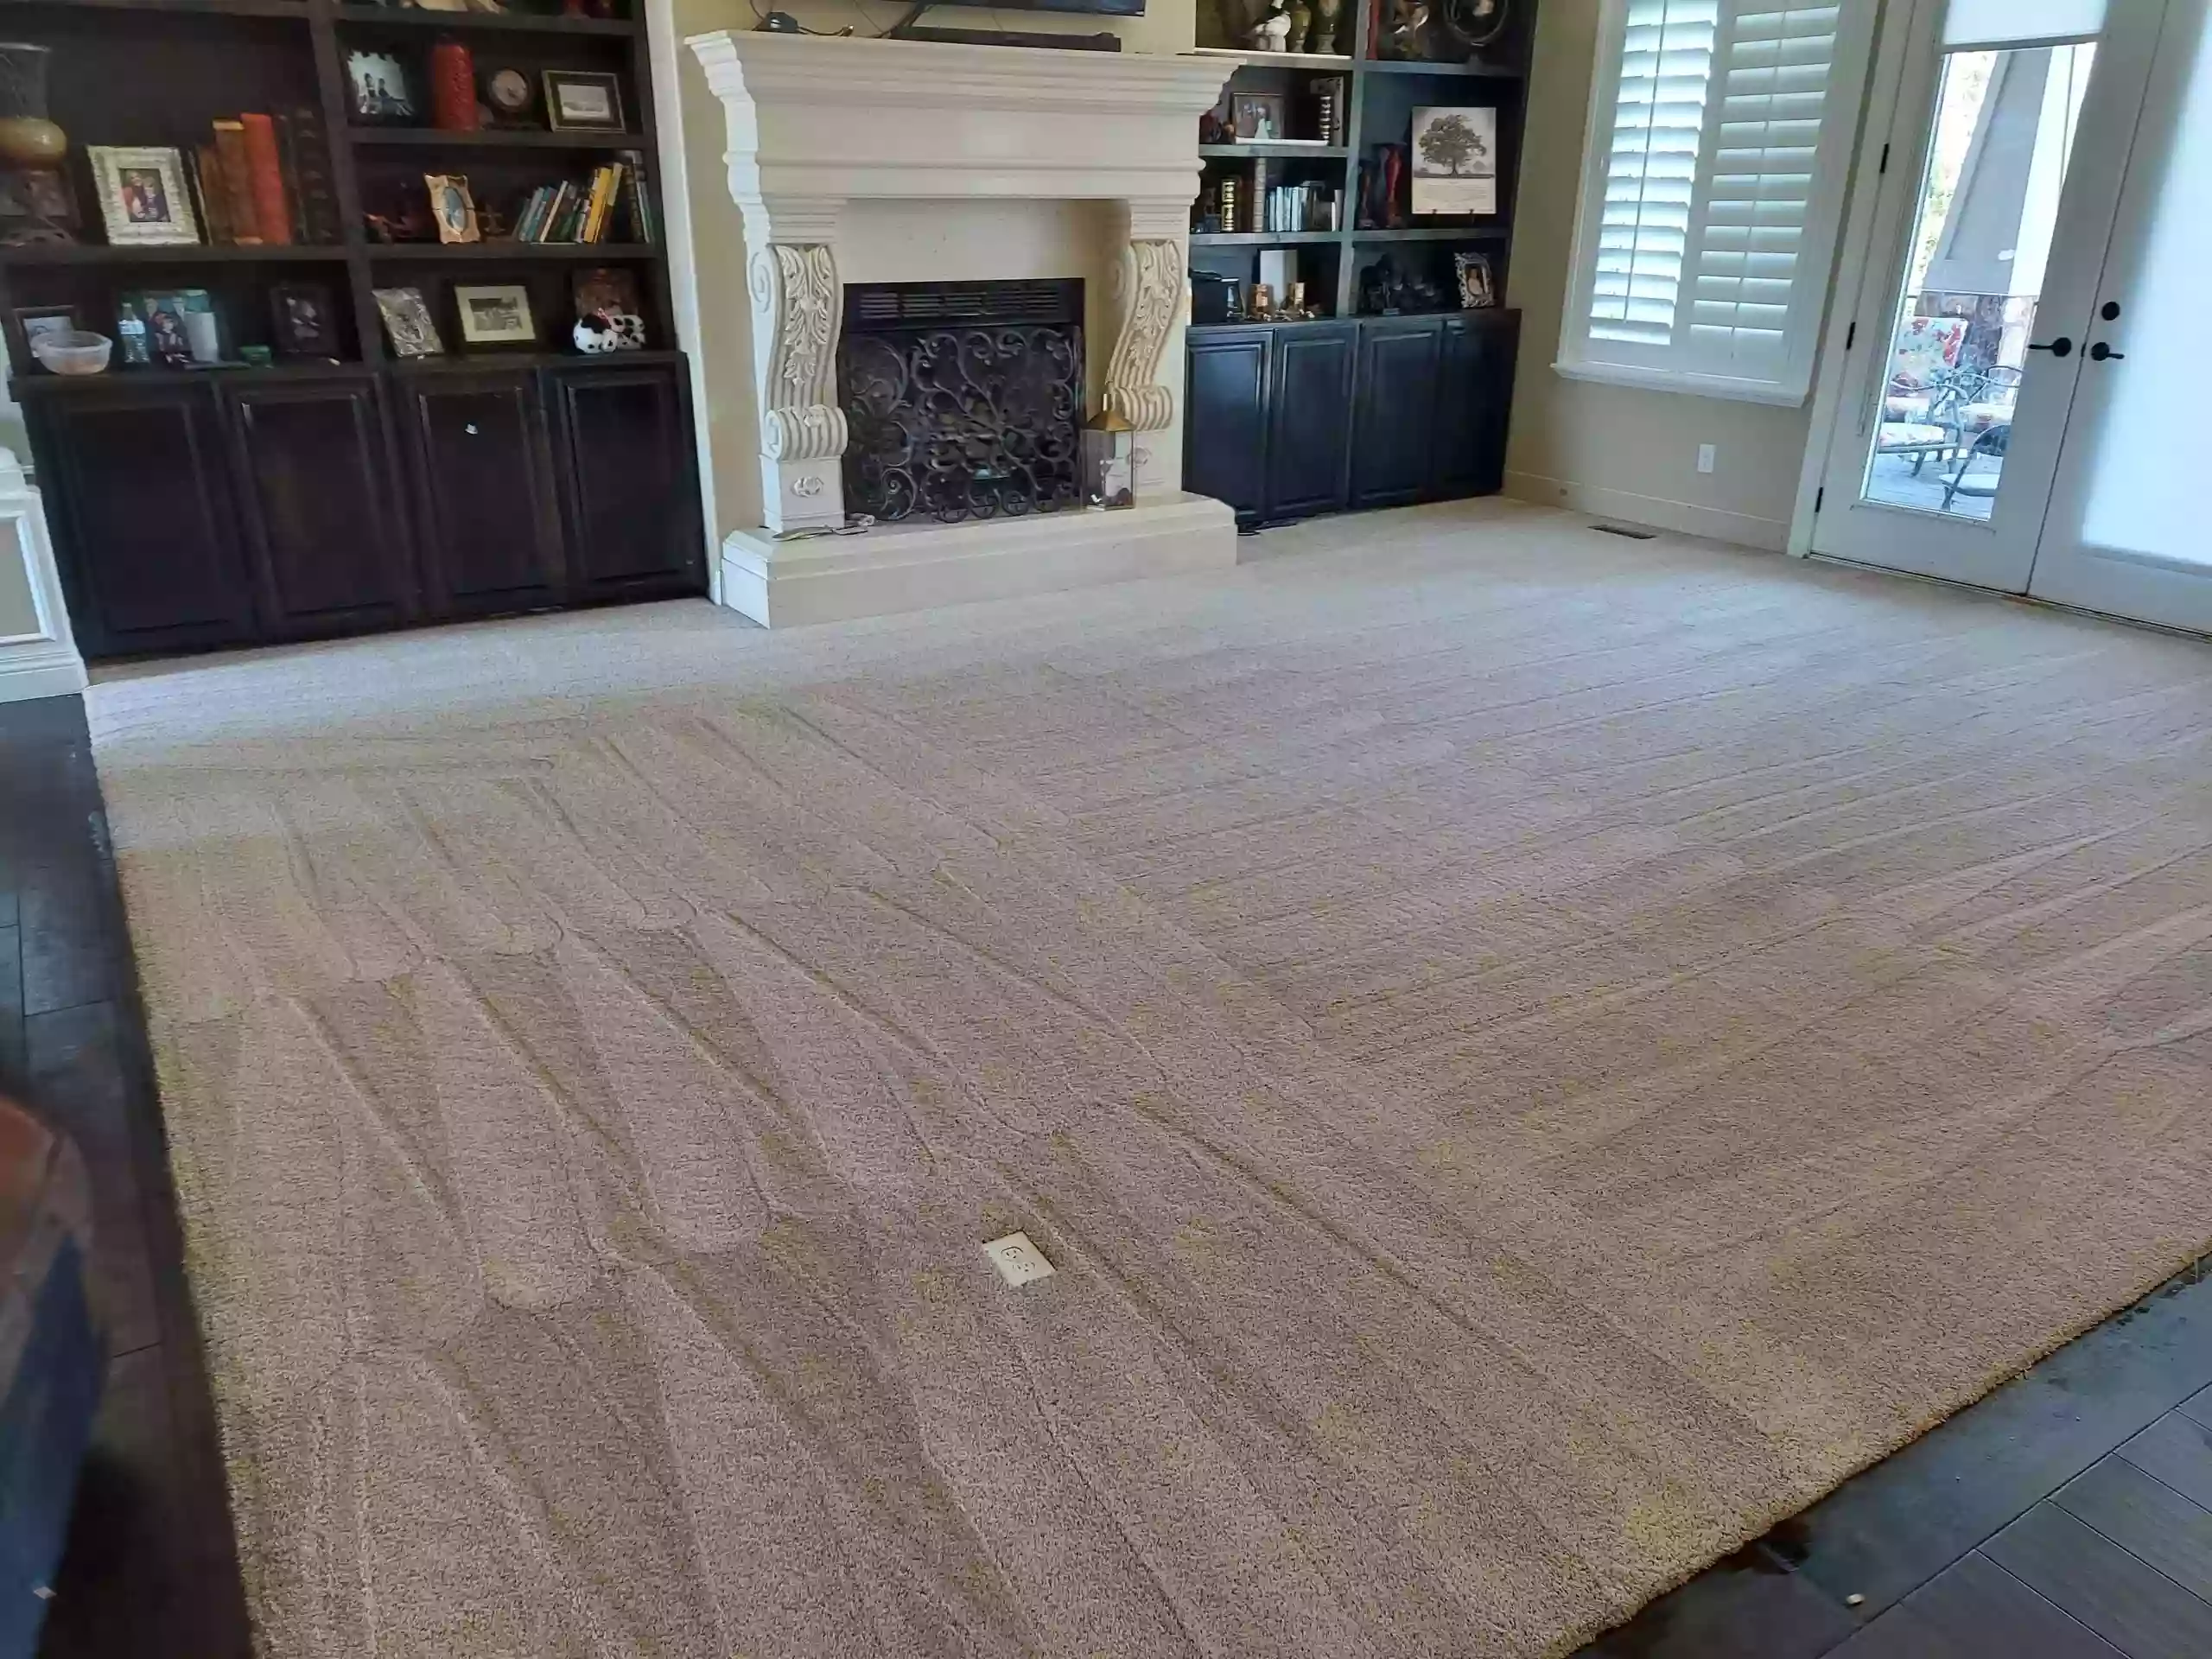 Rich's Carpet Cleaning Plus